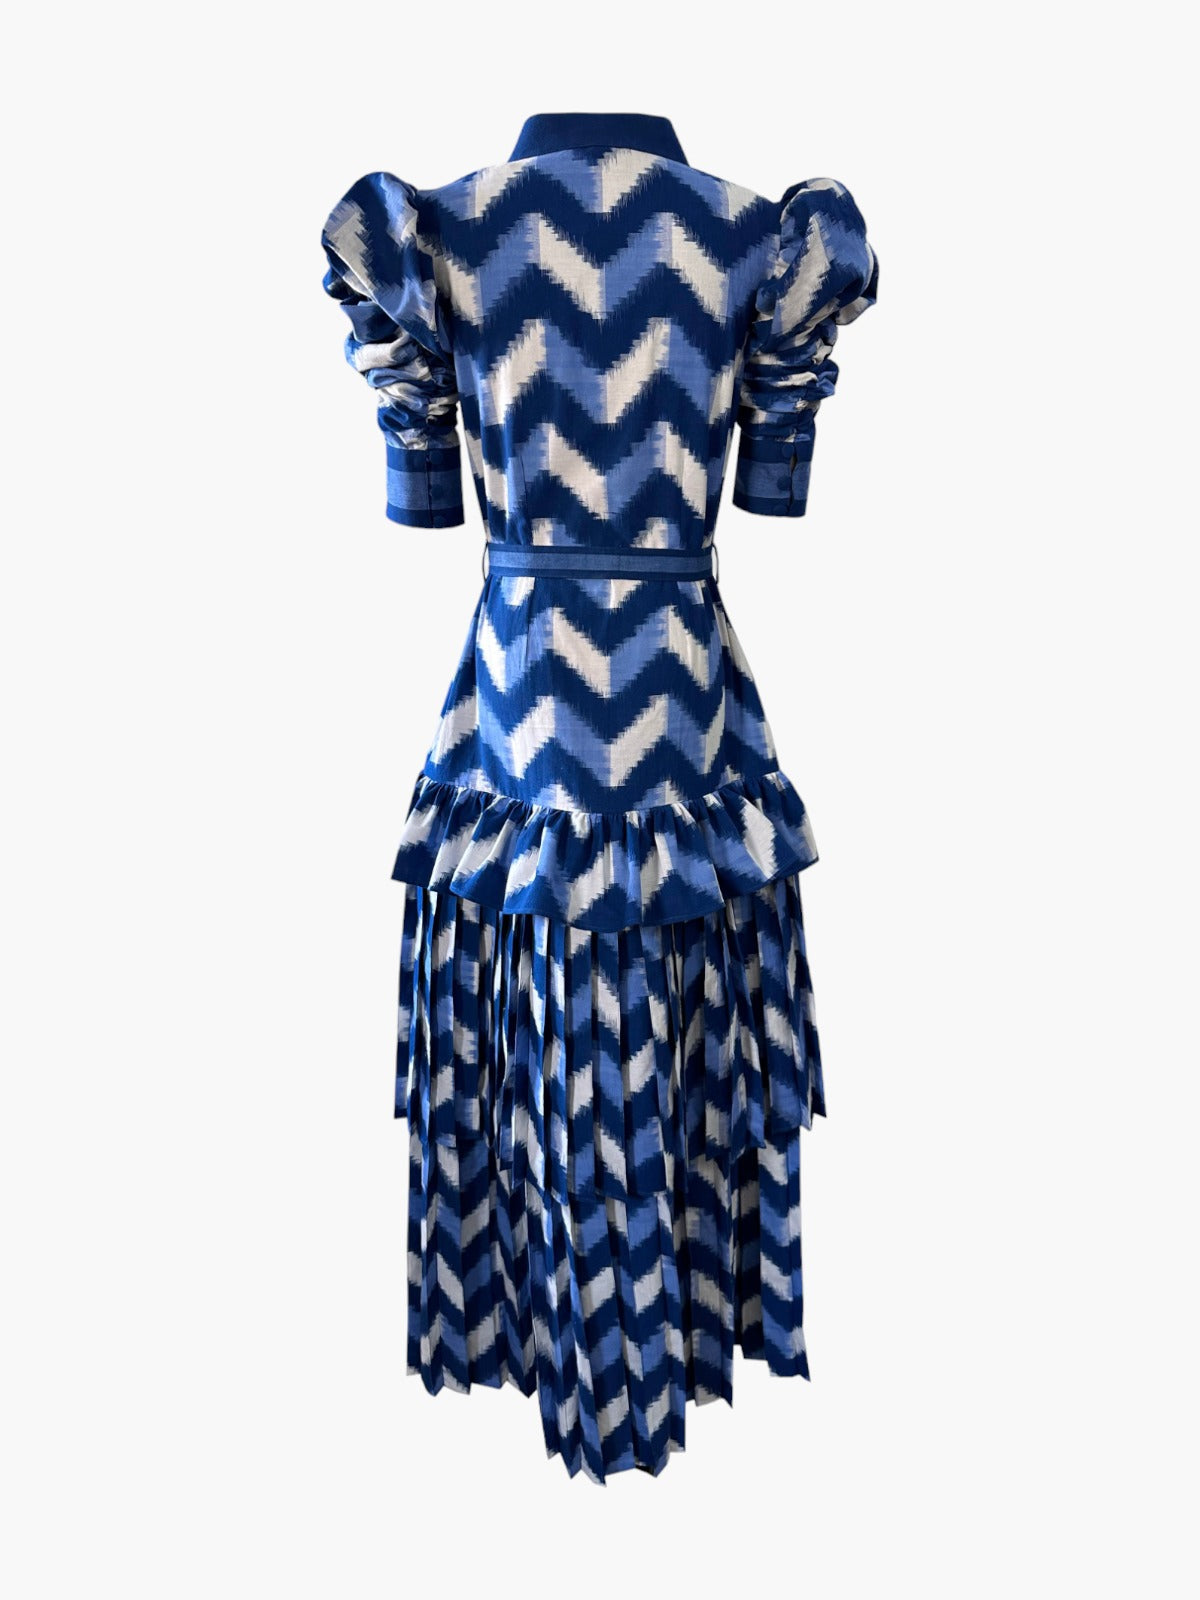 Lapis Lazuli Dress | Waves Lapis Lazuli Dress | Waves